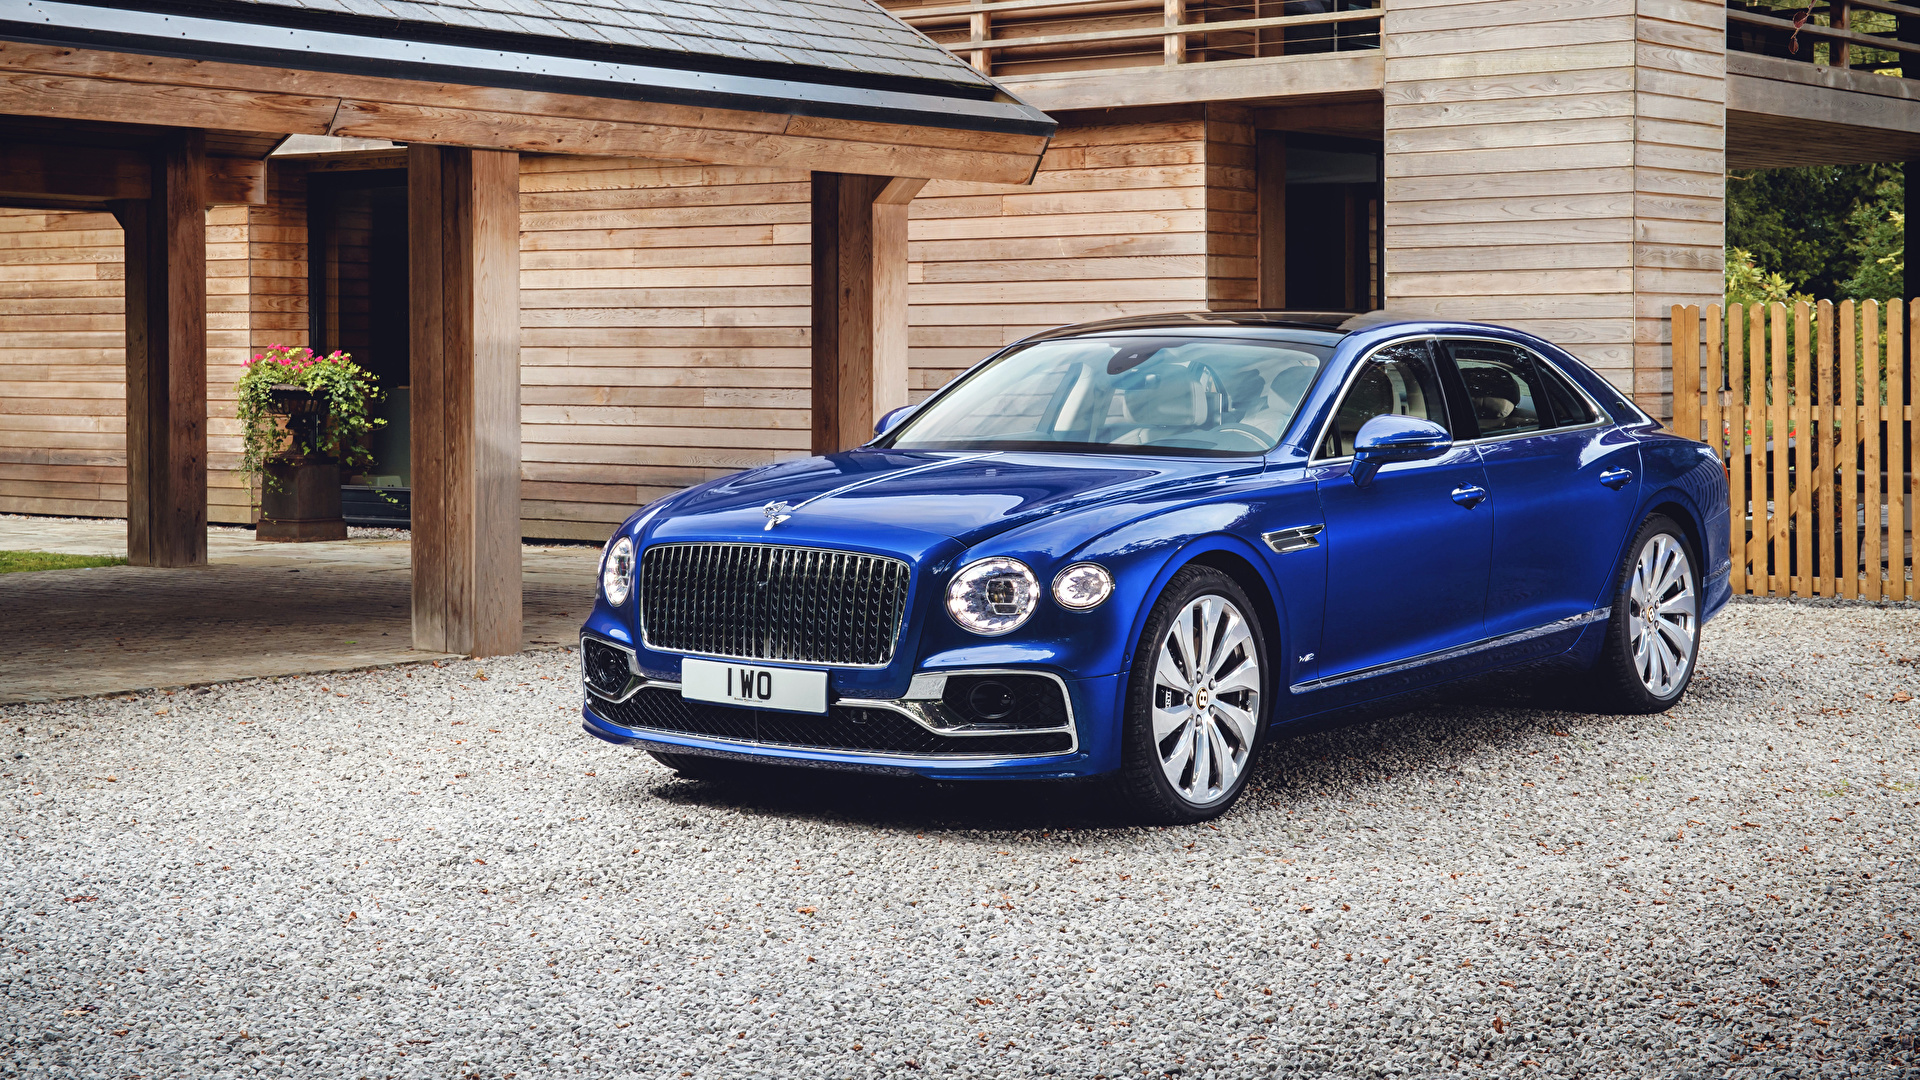 Обои для рабочего стола Бентли 2019-20 Flying Spur First Edition Worldwide Синий машина Металлик 1920x1080 Bentley синяя синие синих авто машины Автомобили автомобиль